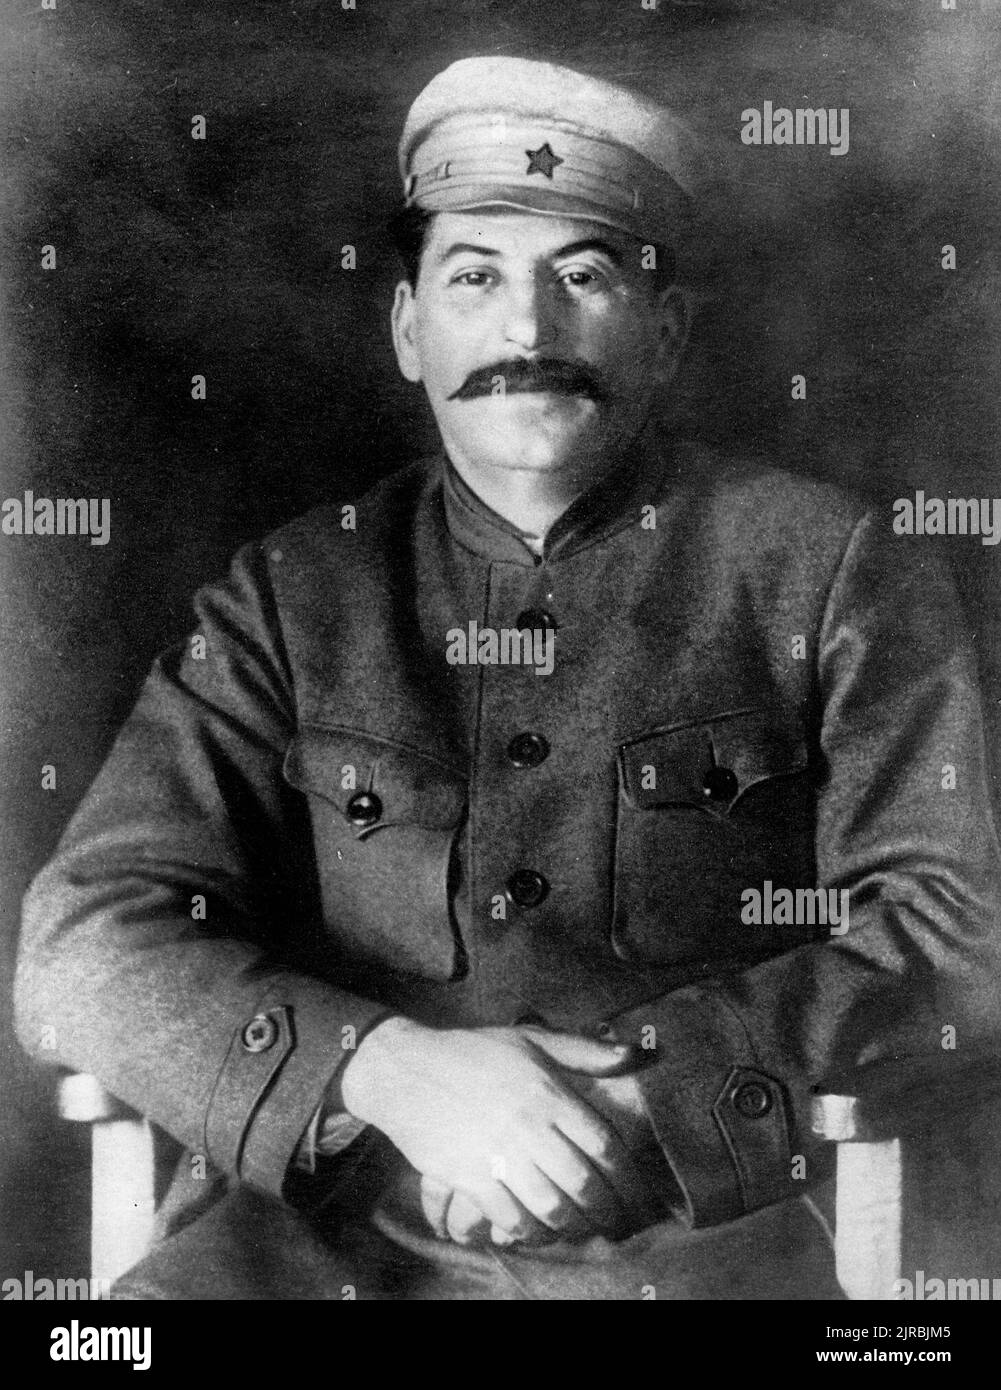 Una fotografia di Stalin, secondo le informazioni pubblicate sulla rivista Kommunist, scattata nel 1920. Foto Stock